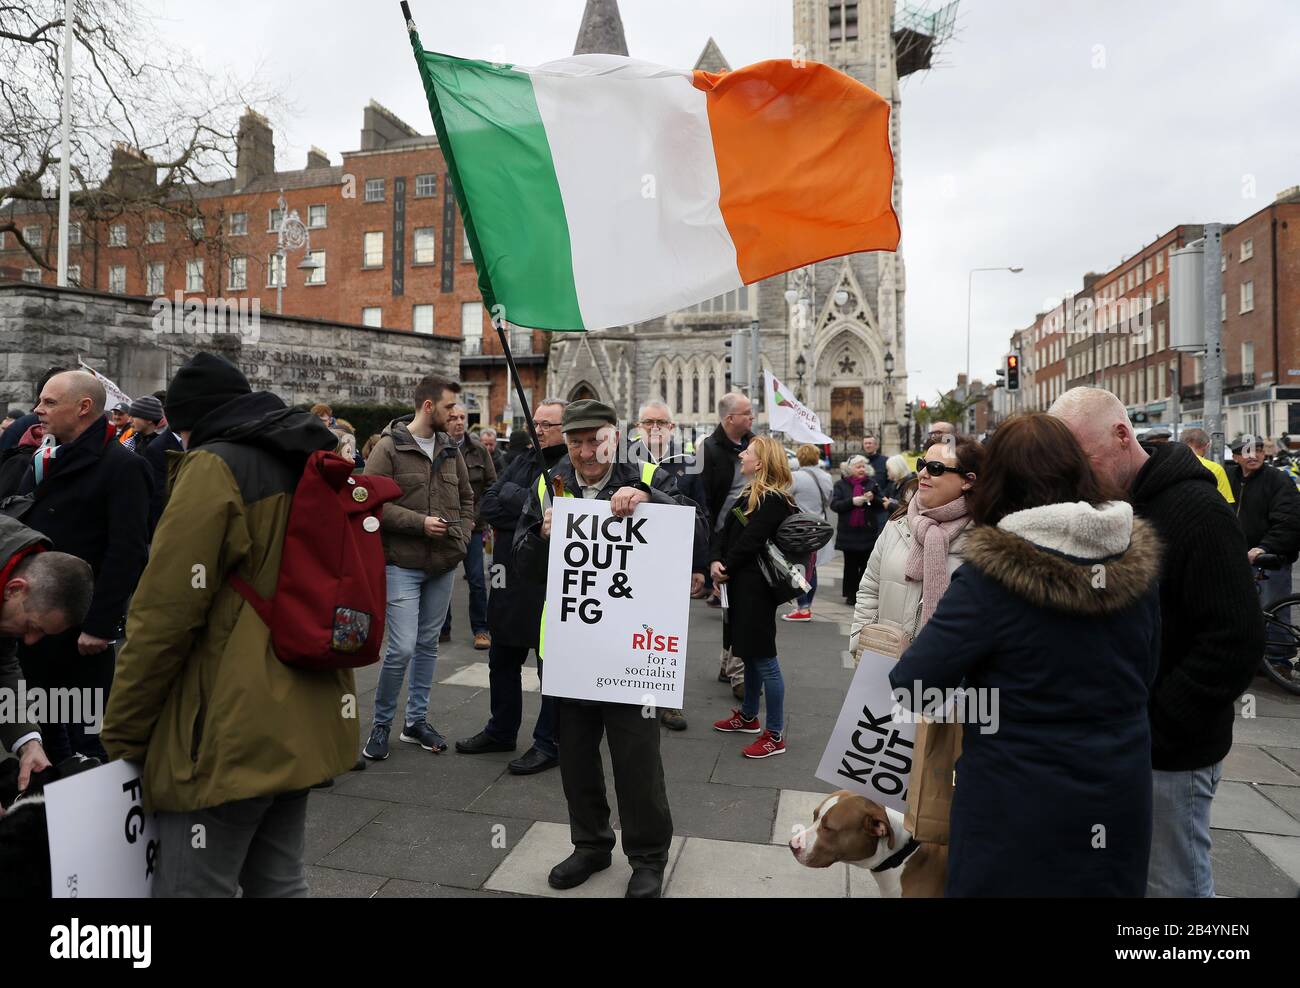 Paddy Morrissey aus Charleville, Cork, kommt an einem marsch in Dublins Innenstadt Teil, der organisiert wird, um Widerstand gegen die Bildung einer neuen Regierung unter Beteiligung von Fianna Fail oder Fine Gael zu demonstrieren. Stockfoto